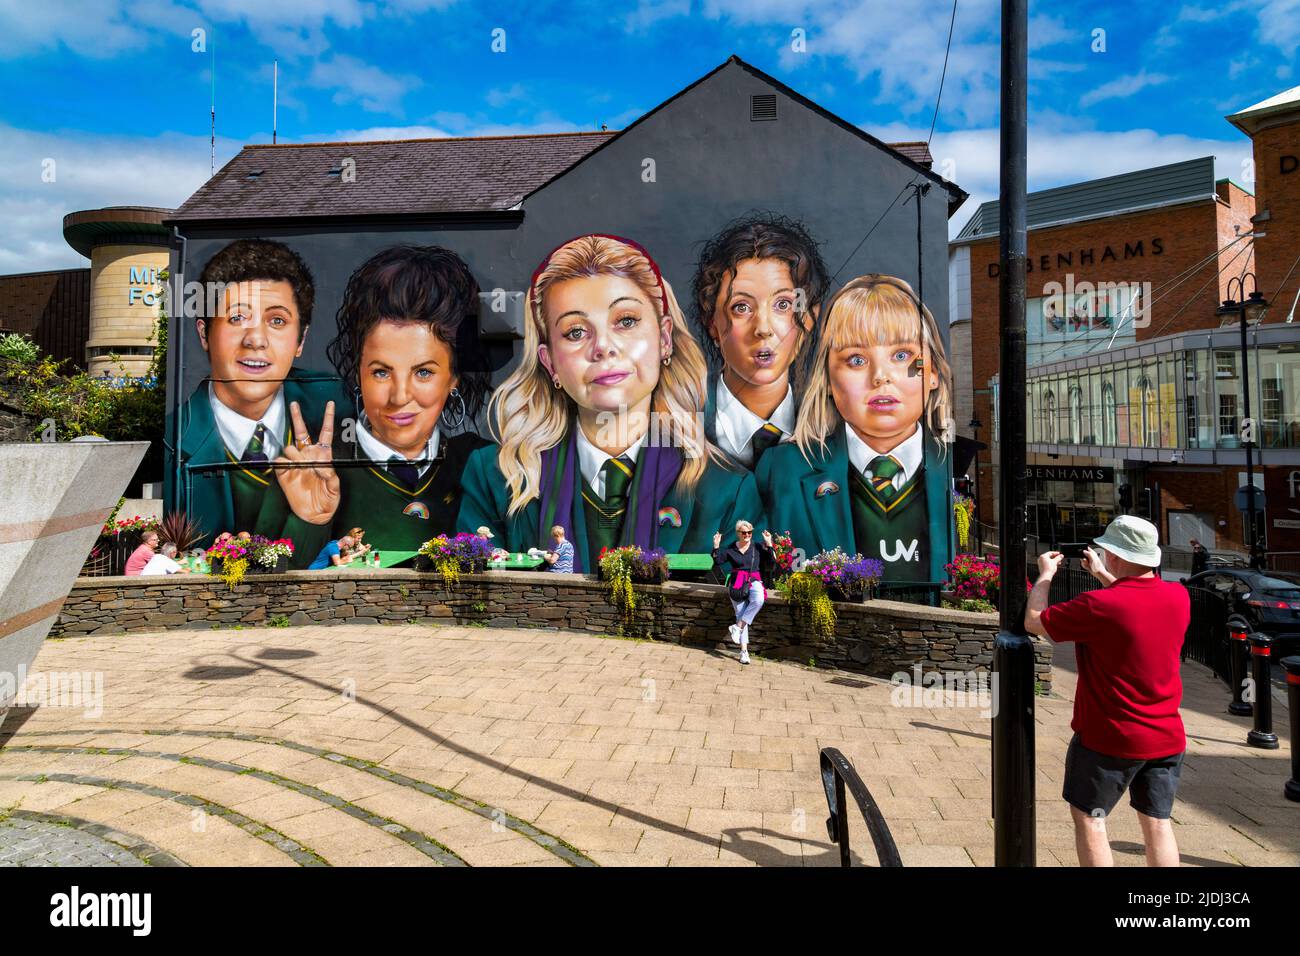 El Derry Girls Mural en Derry City, Irlanda del Norte Foto de stock